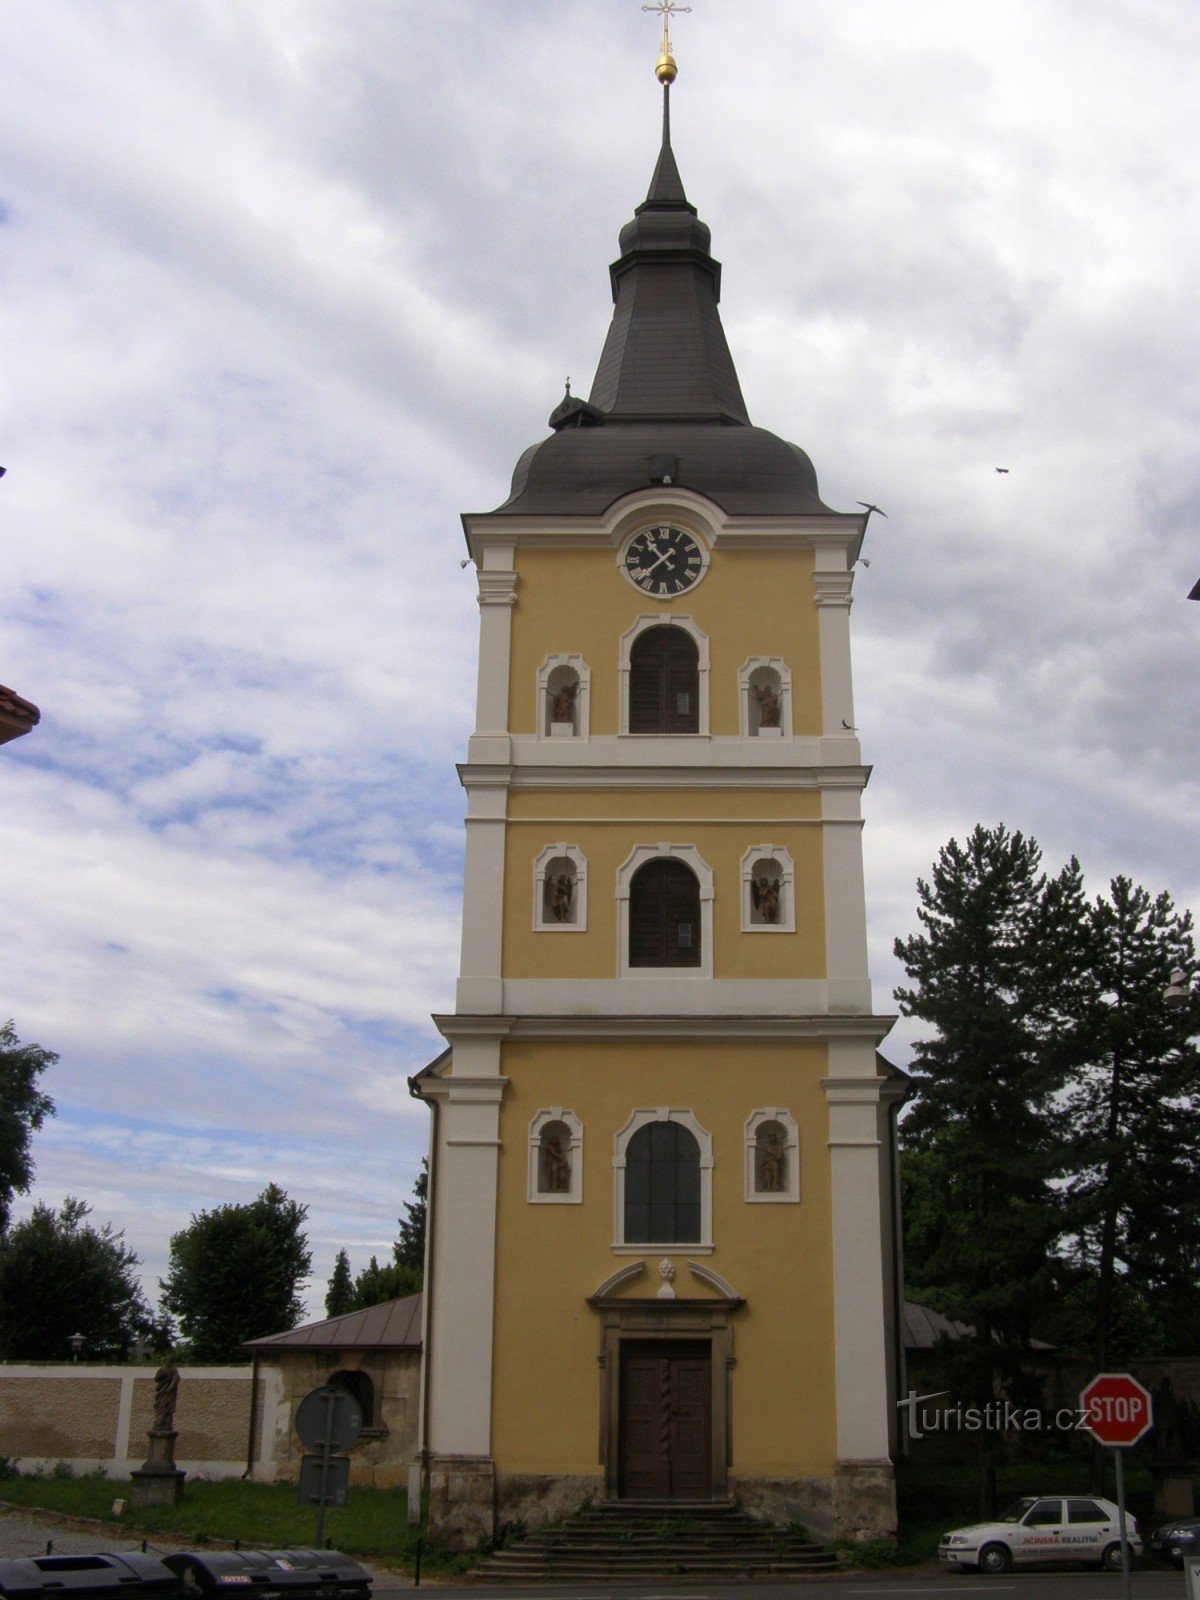 Jičín - Kerk van Onze Lieve Vrouw van Sale